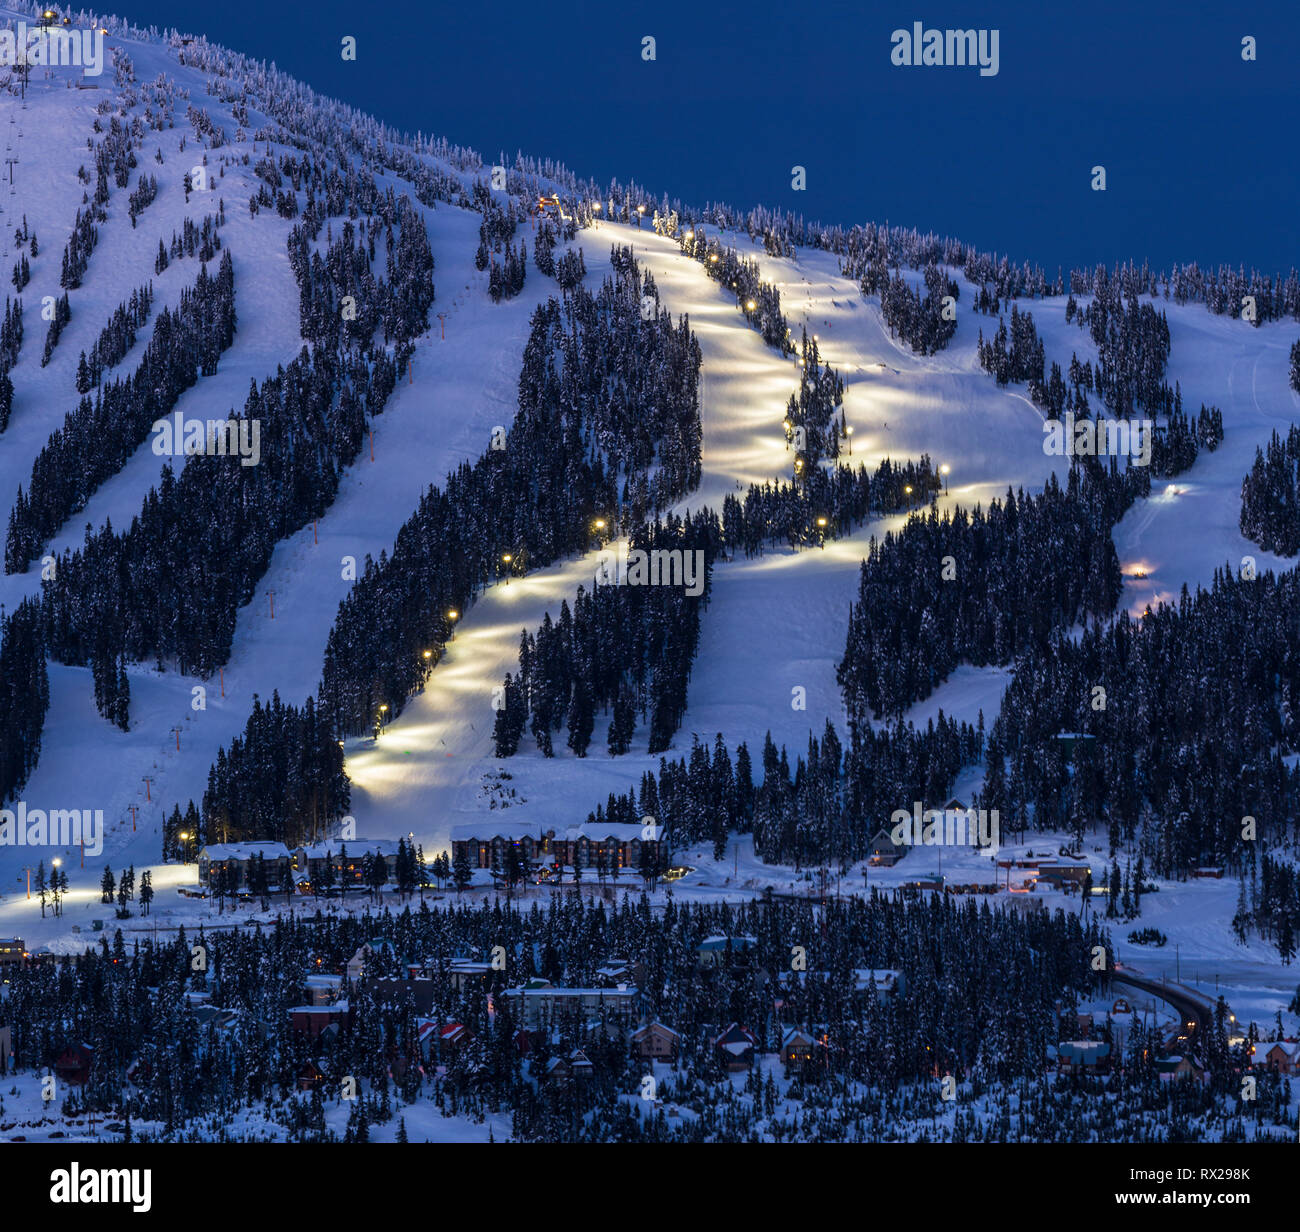 El esquí nocturno se ilumina en la estación de esquí de Mount Washington mientras el atardecer se asienta en la popular estación de esquí de la isla de Vancouver, el valle Comox, la isla de Vancouver, la Columbia Británica, Canadá. Foto de stock